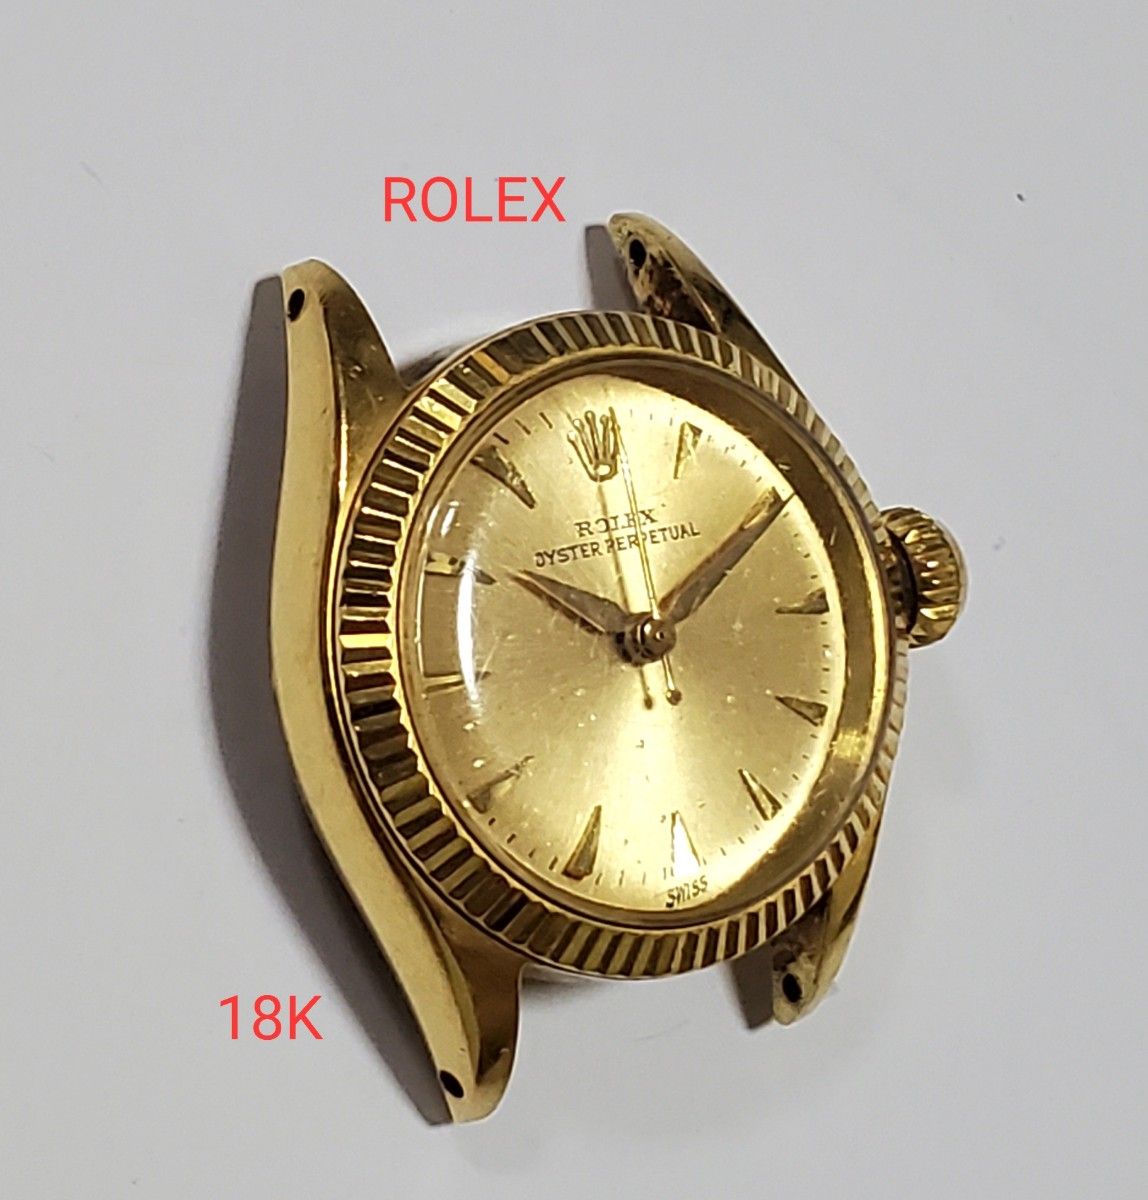 ROLEX ロレックス オイスターパーペチュアル レディース腕時計 18K 金無垢 6619 自動巻き YG 18金 K18